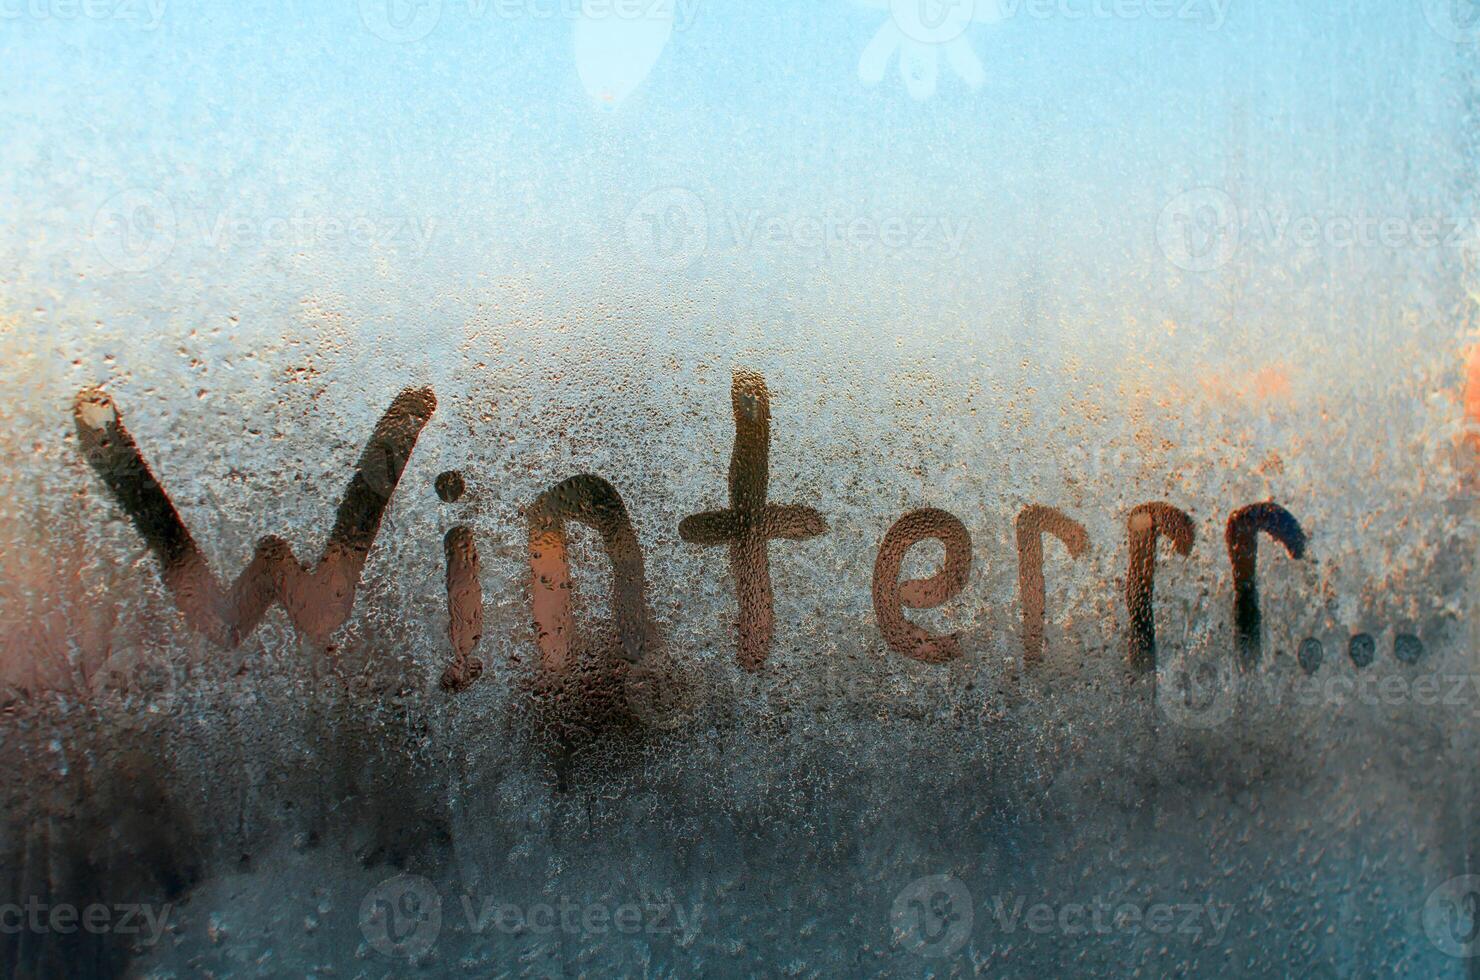 invierno congelado ventana. creativo ortografía de el palabra invierno, medio frío y congelación. escarchado modelo en vaso, soleado Mañana. foto